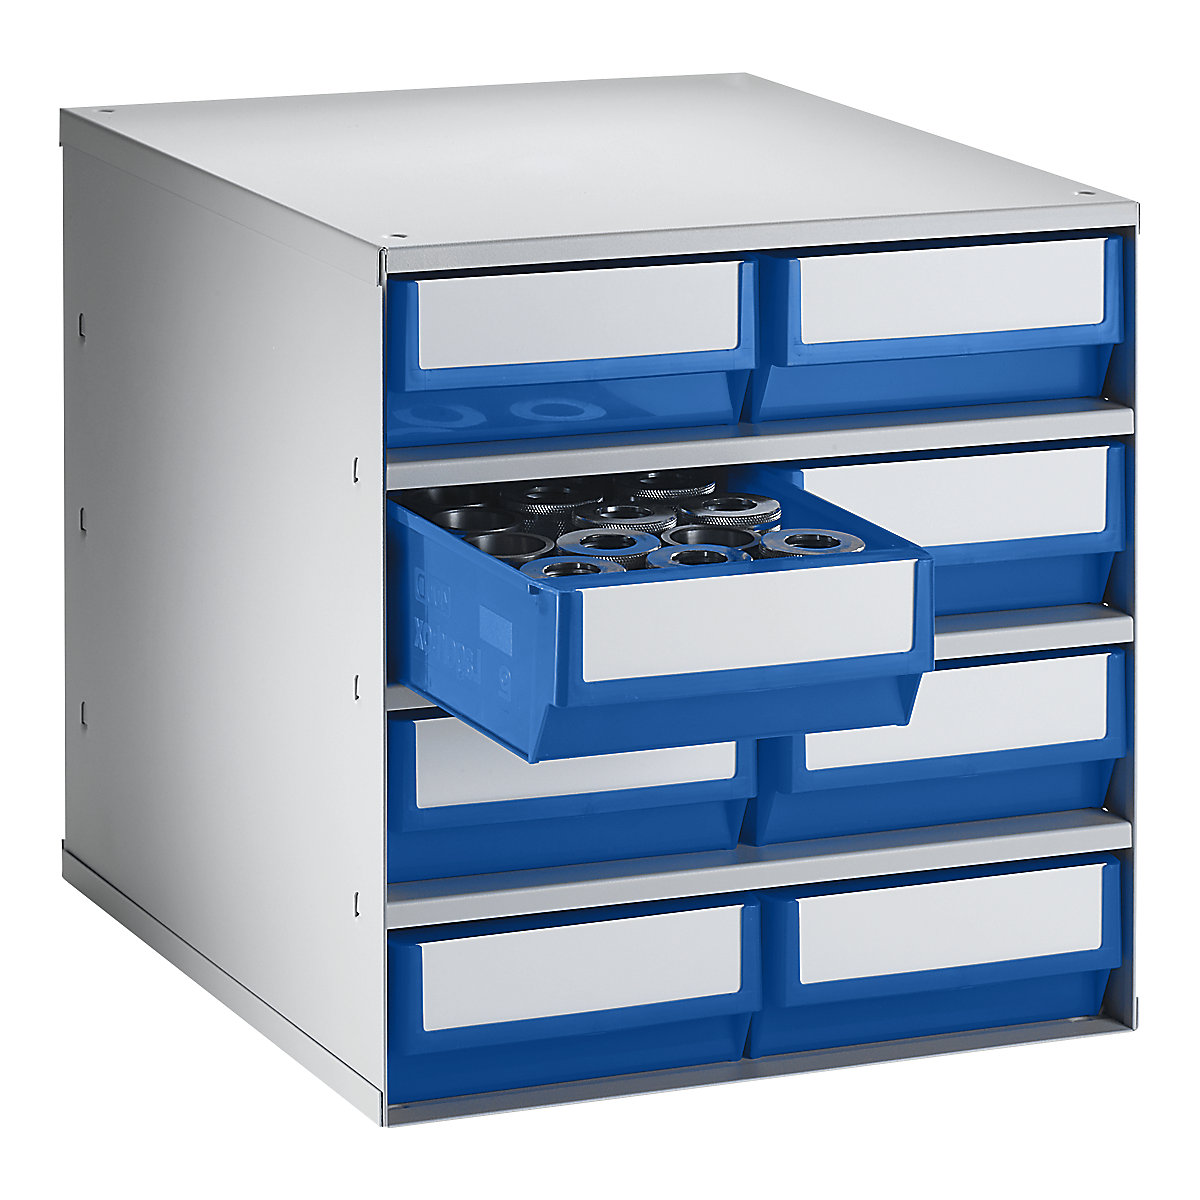 Zásuvkový zásobník, nosnost tělesa 75 kg, v x š x h 395 x 376 x 400 mm, 8 zásuvek, zásuvky modré-5